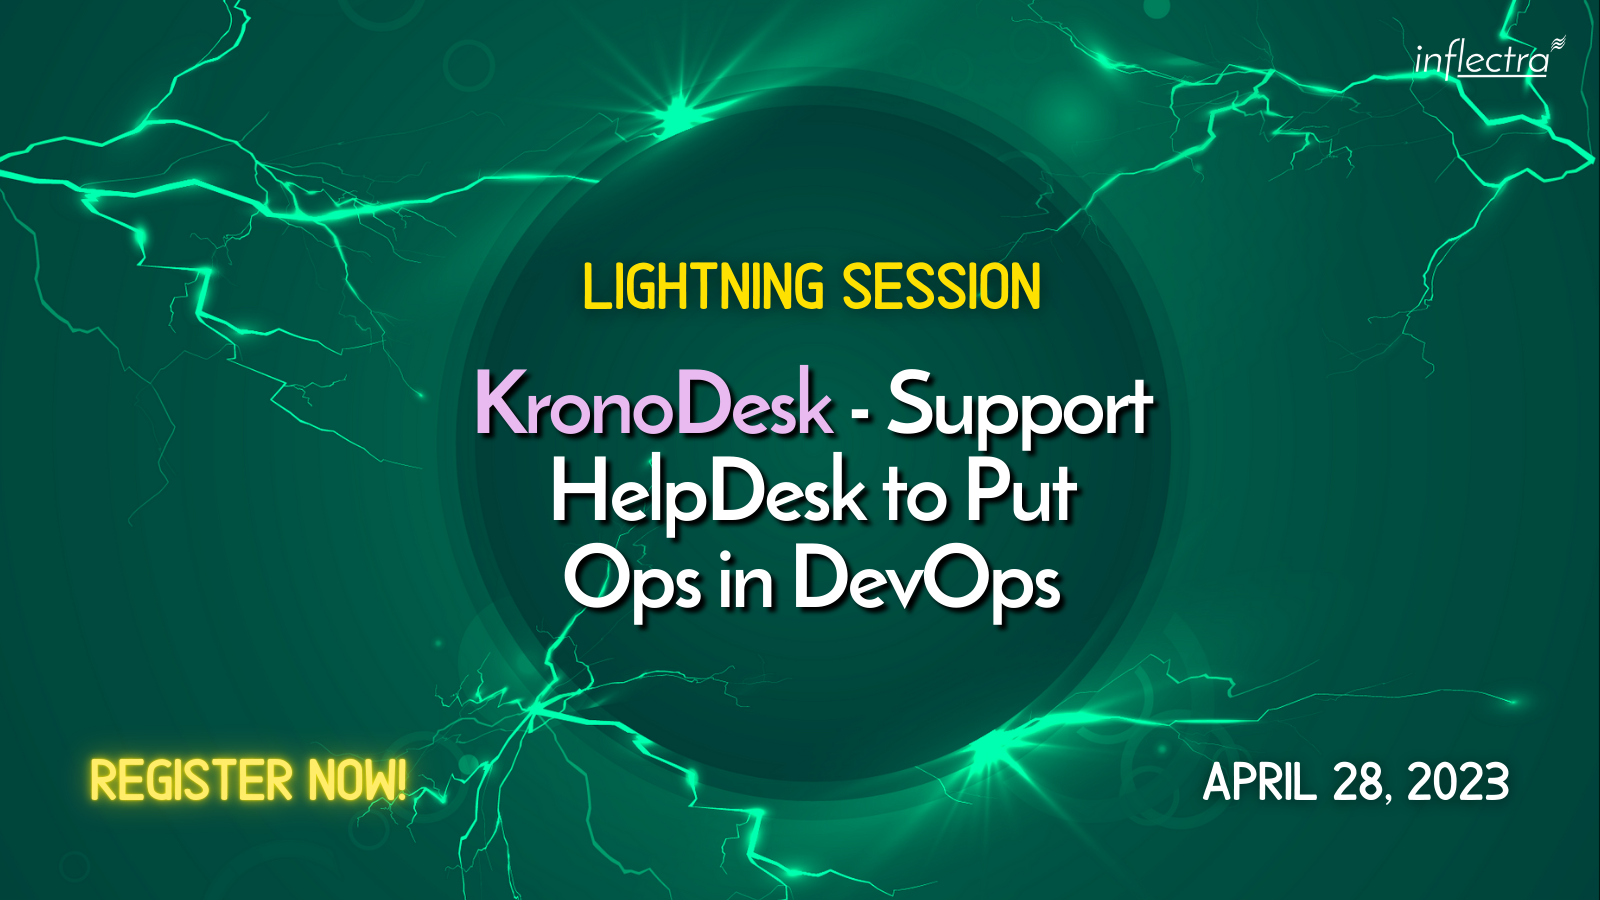 lightning-session-kronodesk-support-helpdesk-to-put-ops-in-devops-inflectra-image